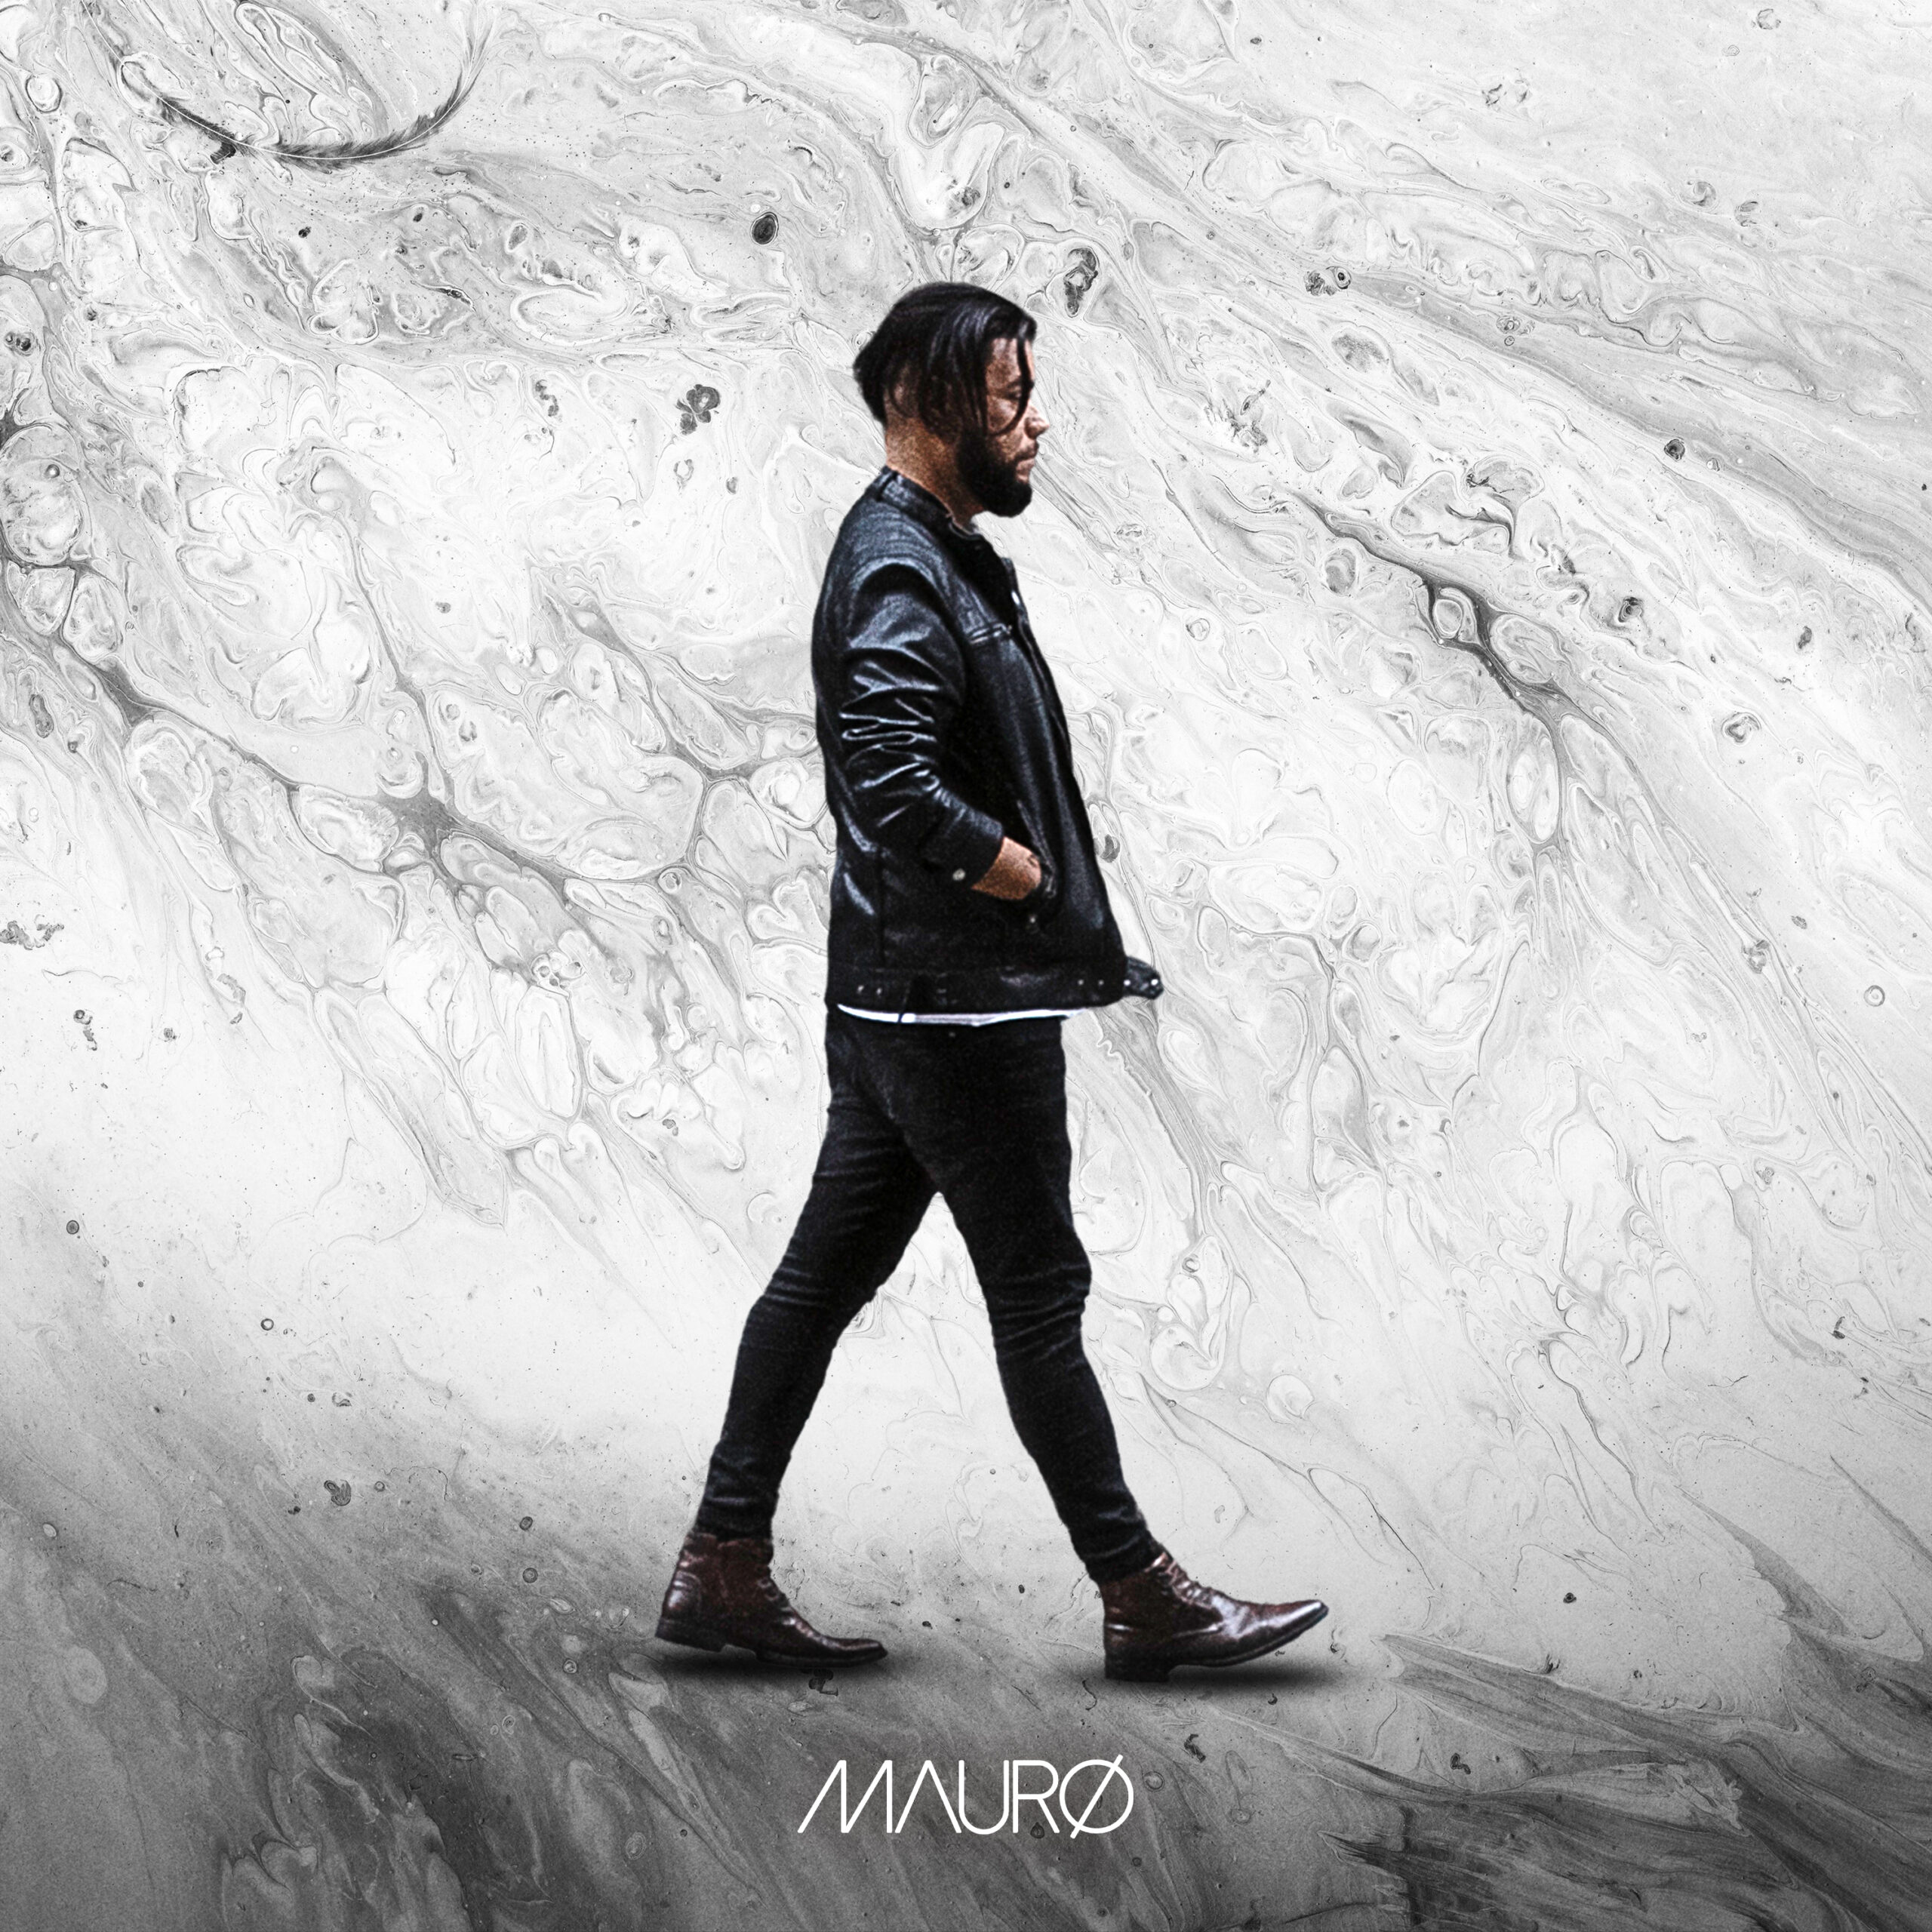 Mauro Henrique apresenta o álbum “Mauro” com singles remixados e músicas exclusivas